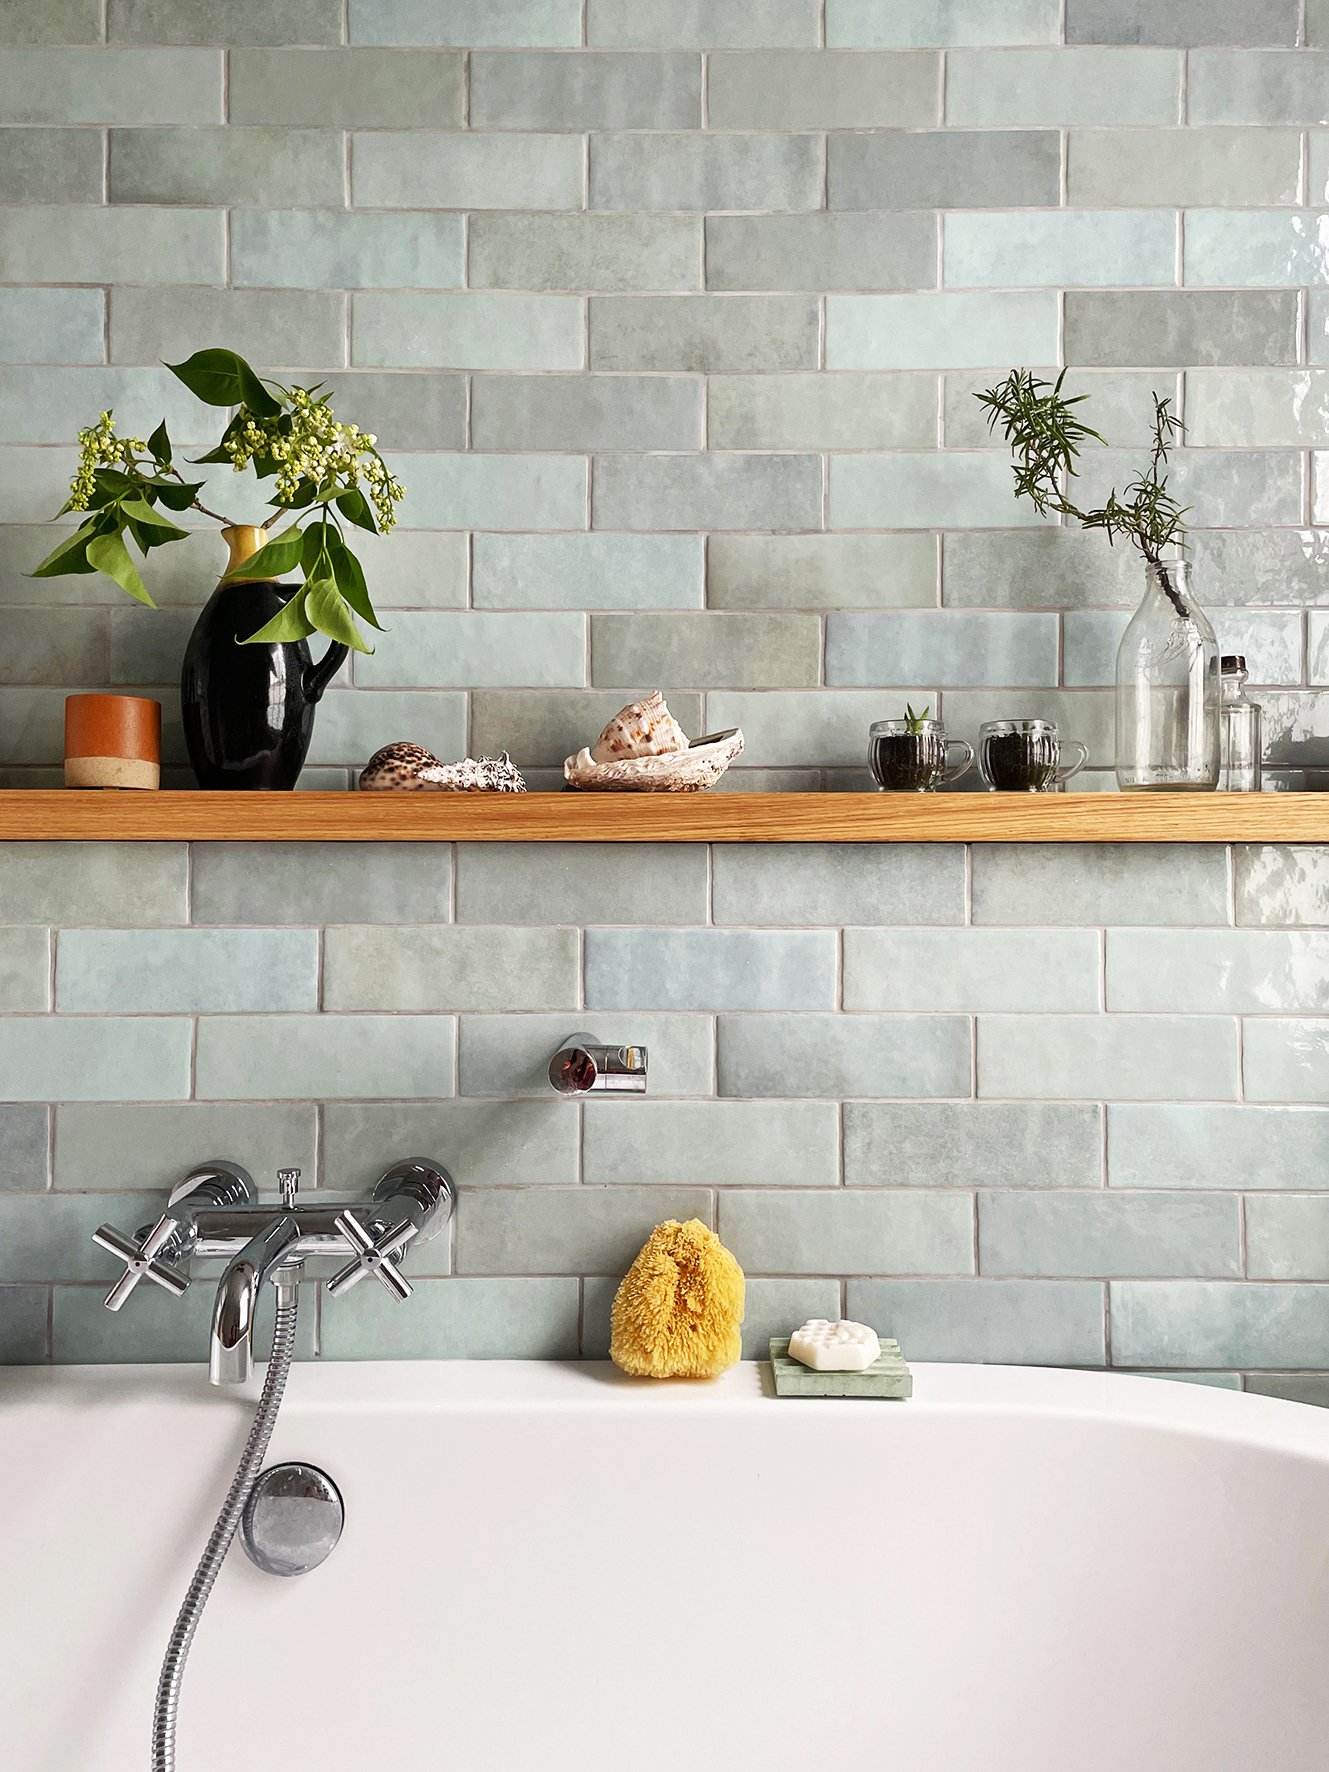 CharlotteBucciero-Interiors-Bathroom-tile-blue-splashback-bathtub.jpg